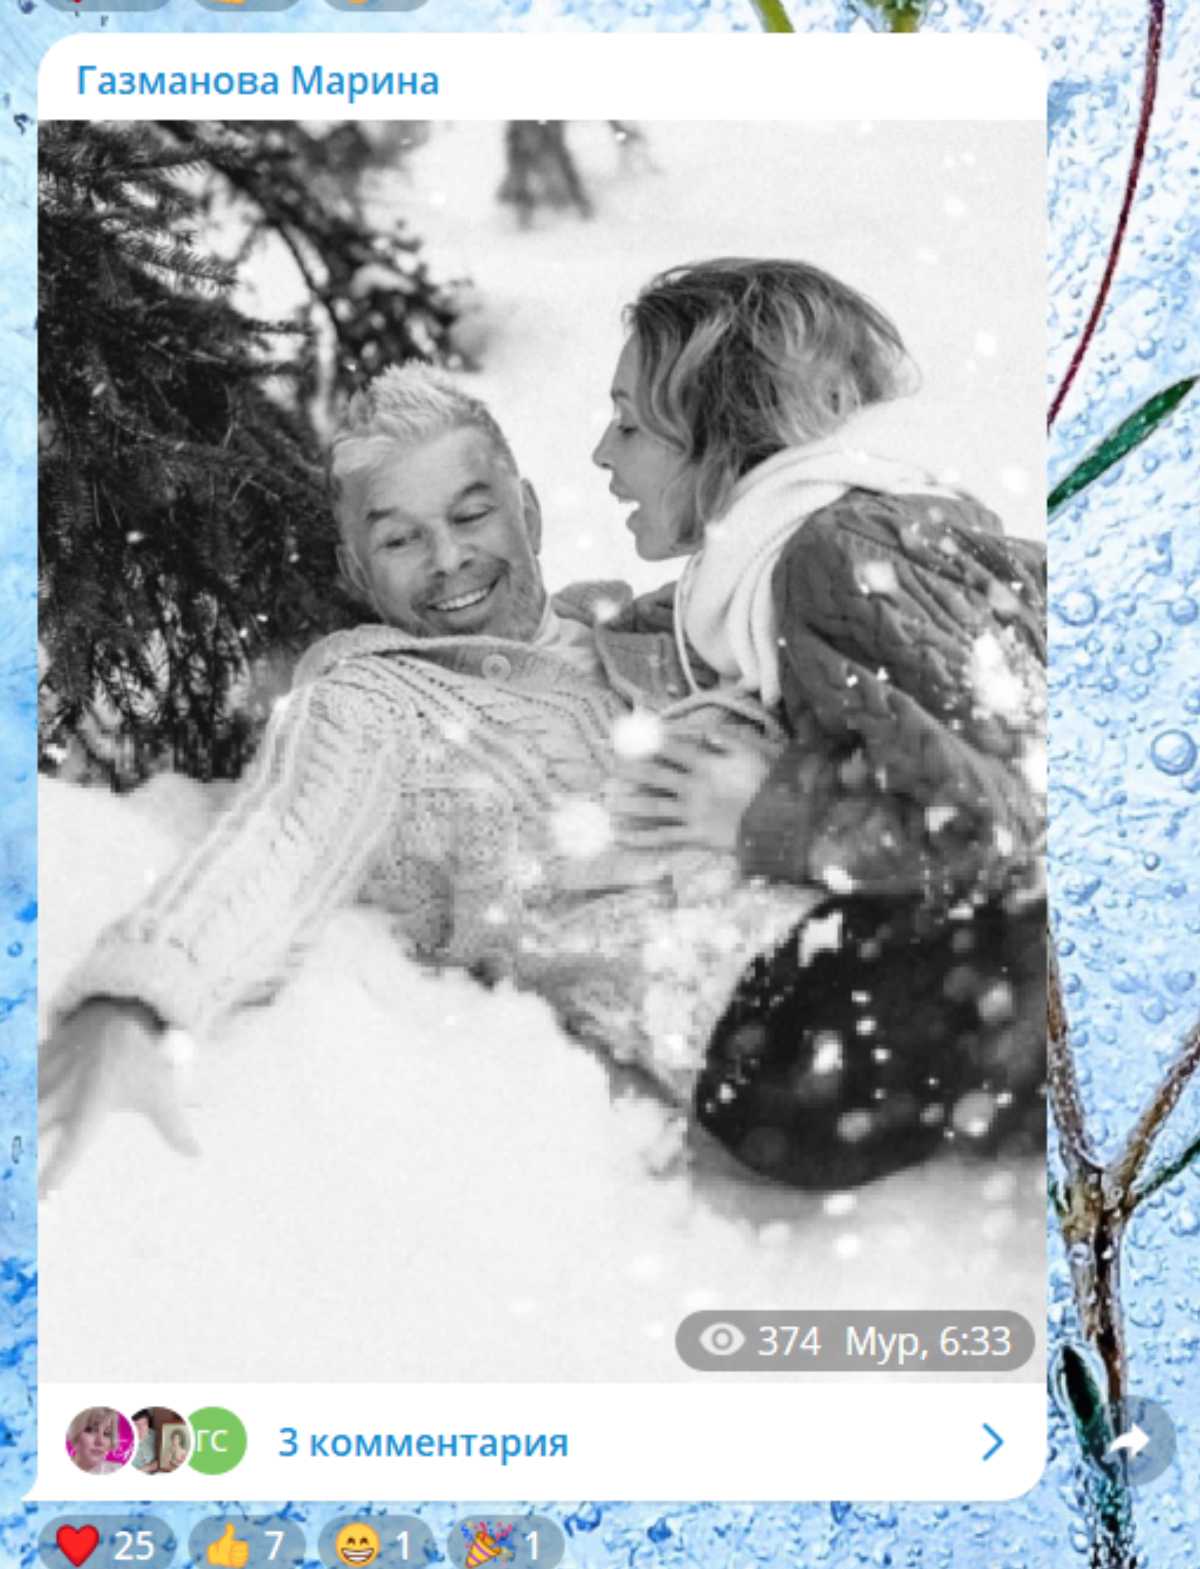 Упала на грудь: Газманова без верхней одежды нашли под елкой в снегу